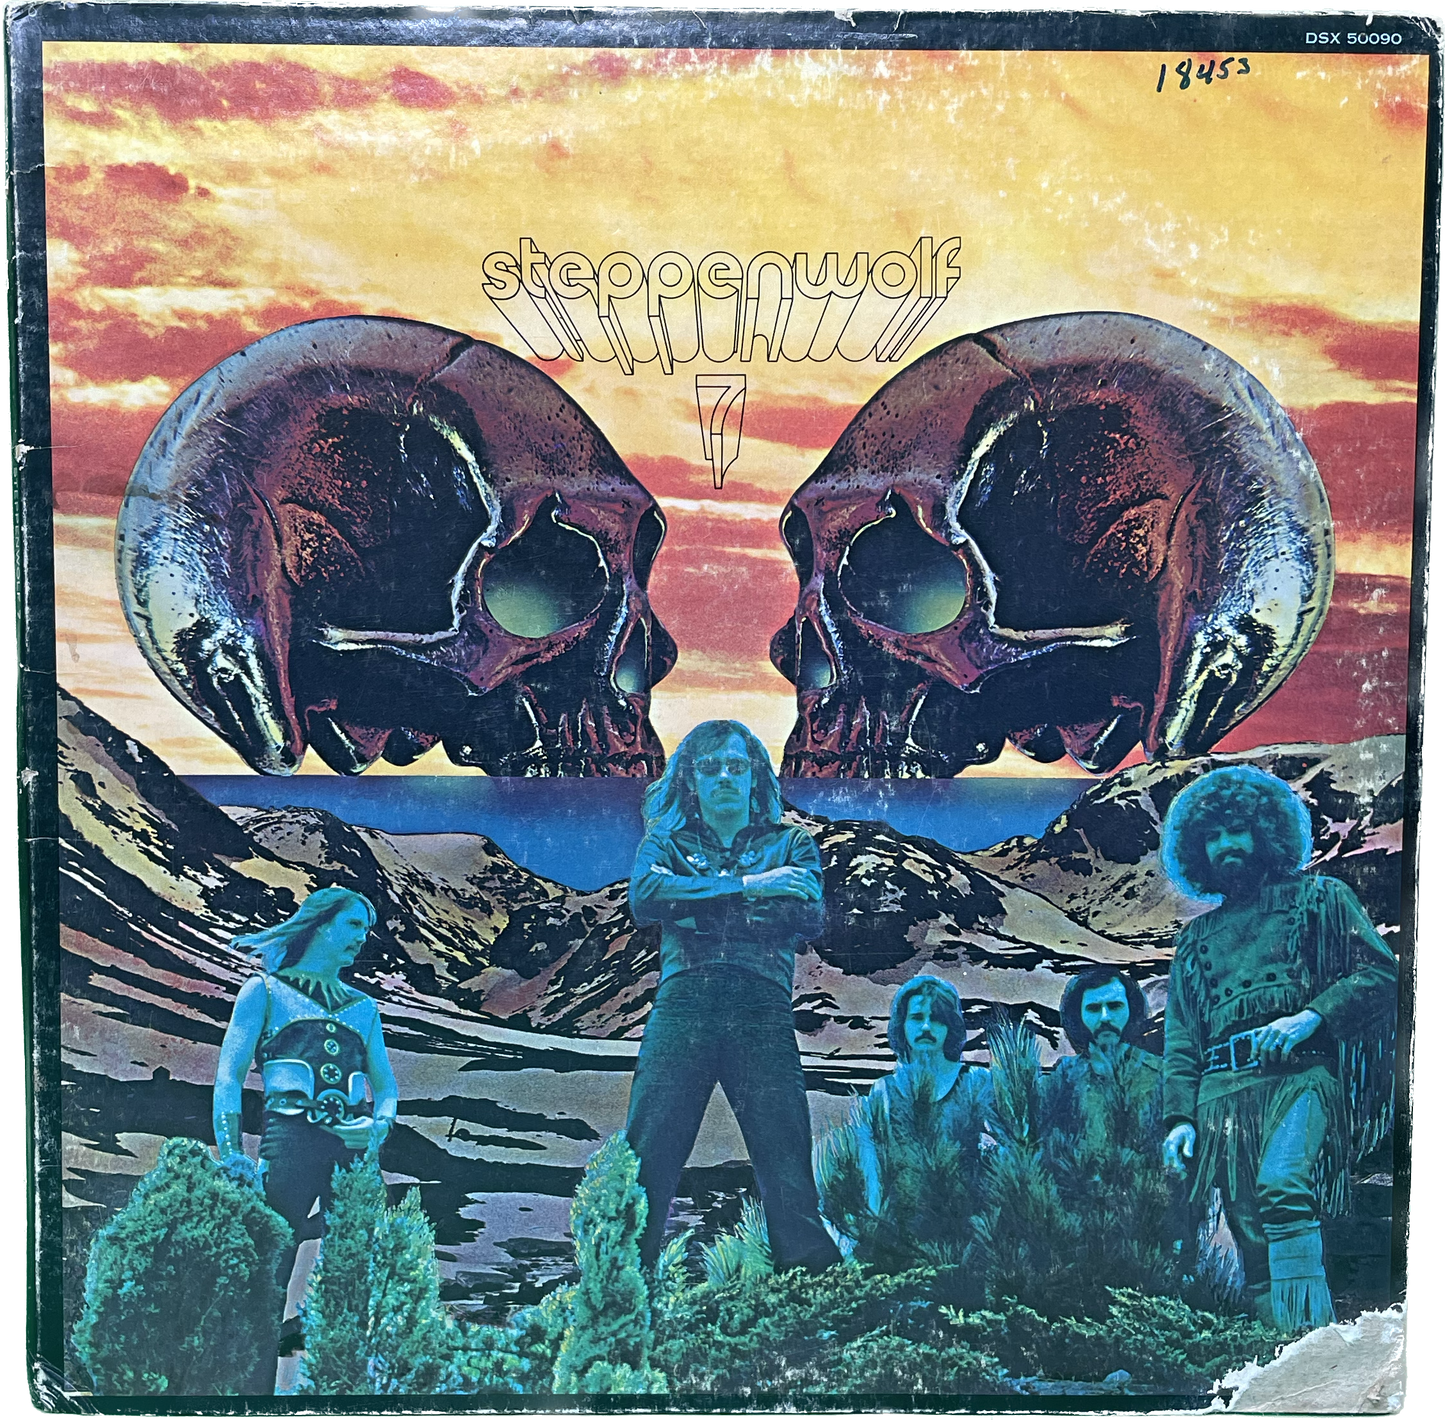 Lp G G Steppenwolf 7 Original Pressing Vinyl Record LP Album Dunhill 50090 1970